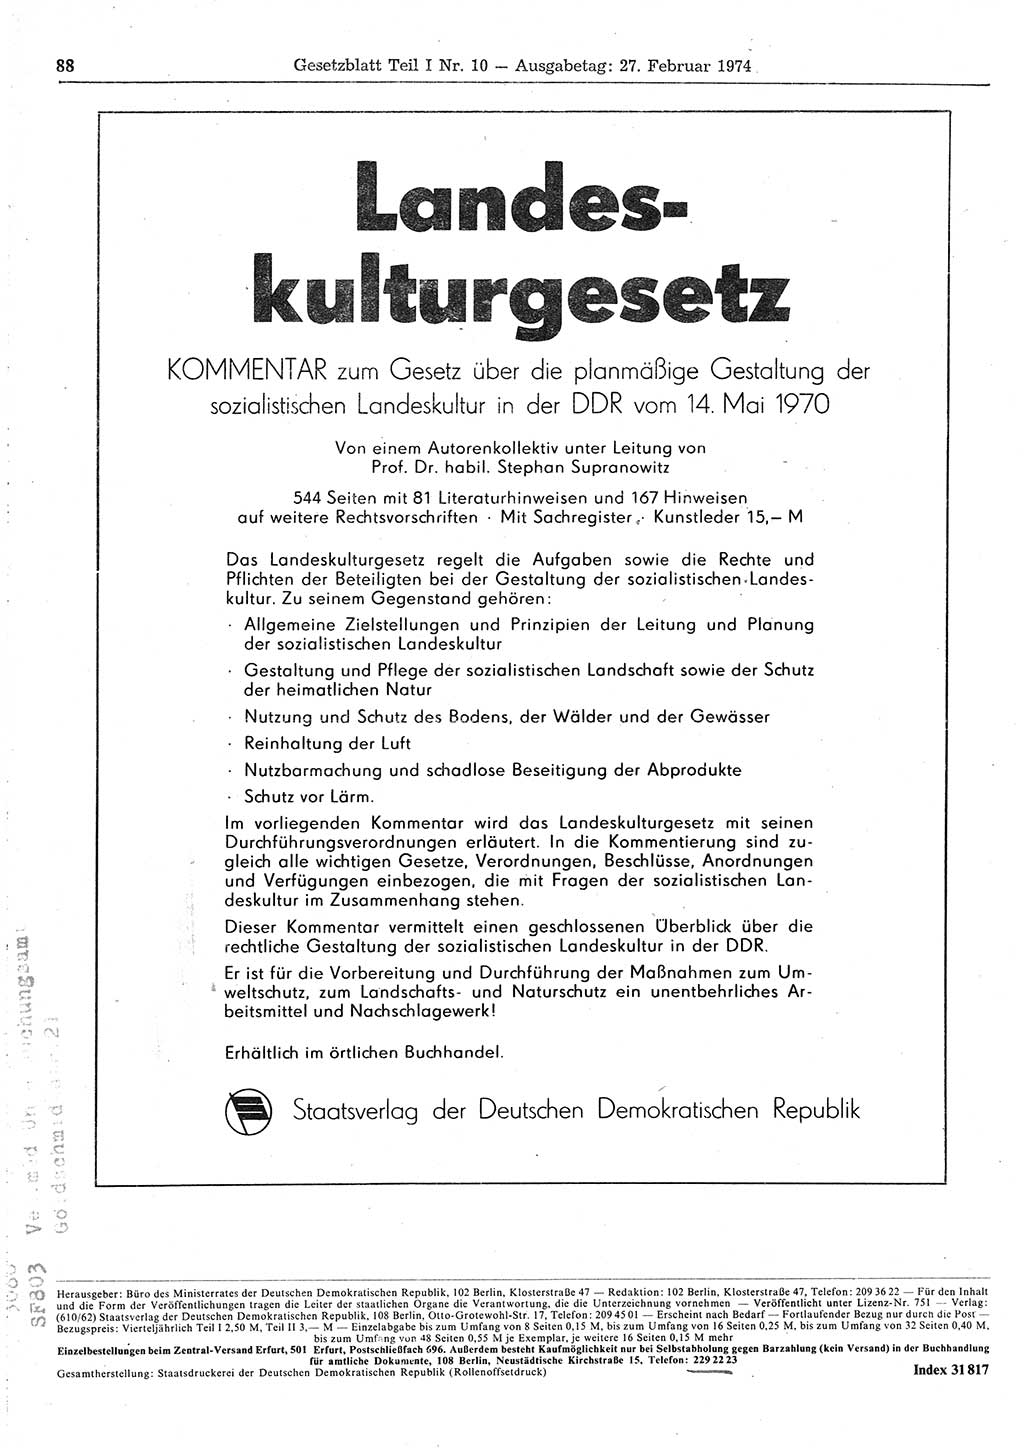 Gesetzblatt (GBl.) der Deutschen Demokratischen Republik (DDR) Teil Ⅰ 1974, Seite 88 (GBl. DDR Ⅰ 1974, S. 88)